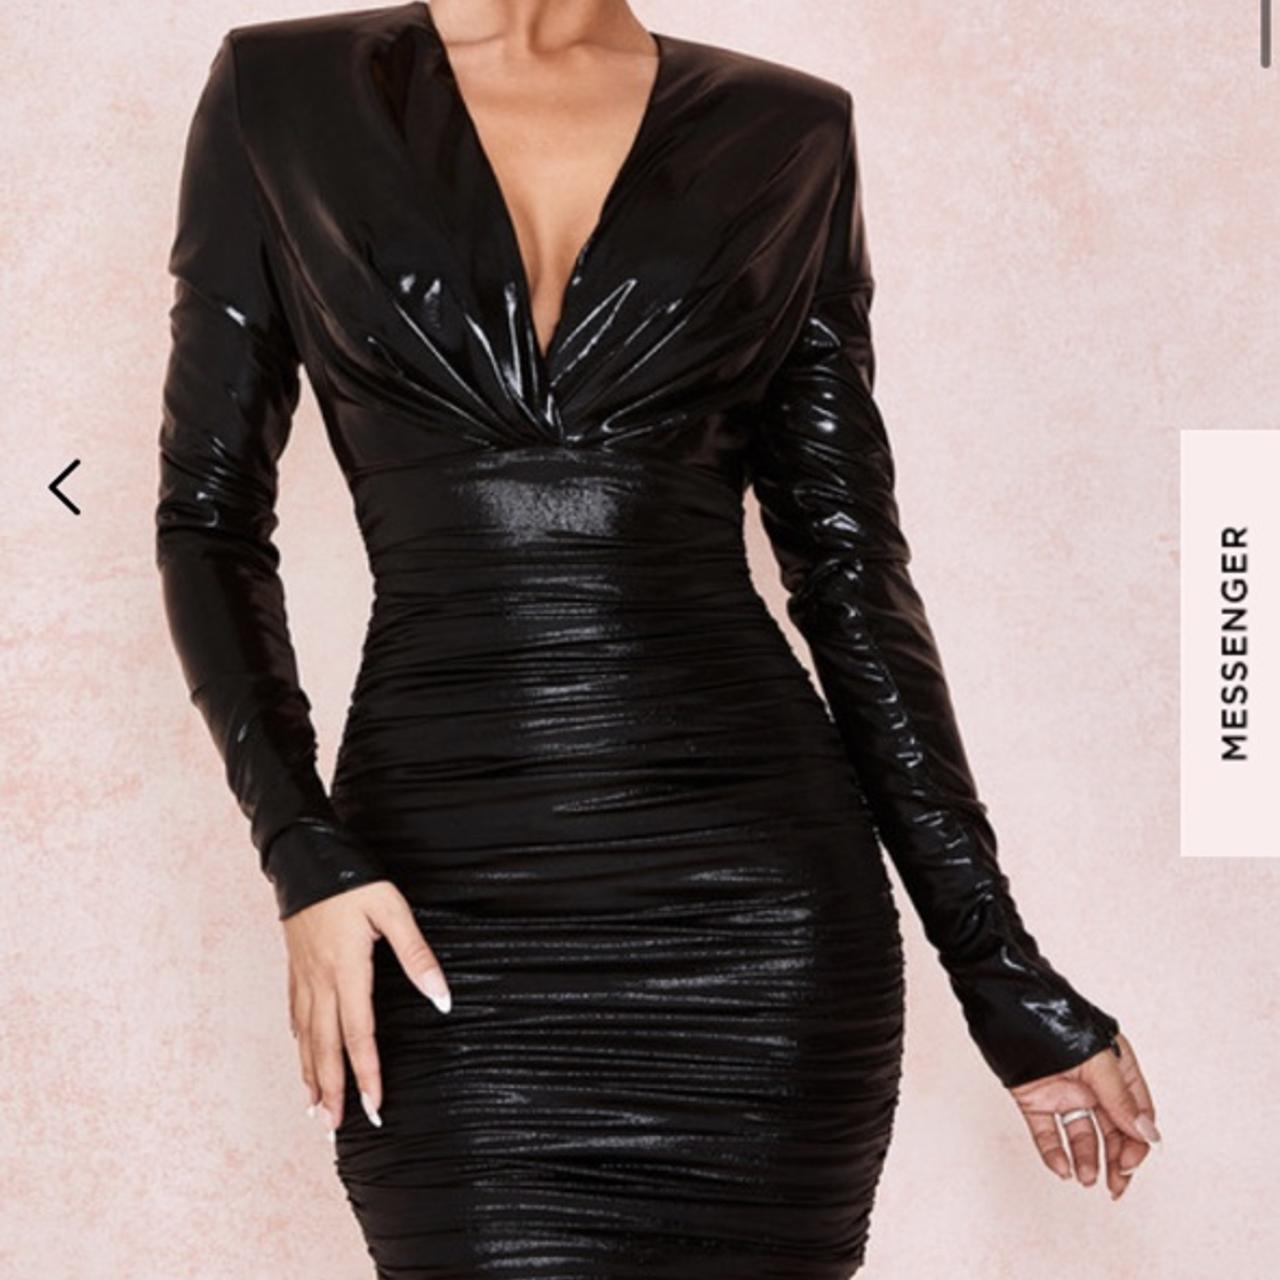 Black metallic dress. Wet look dress. Worn in try on... - Depop